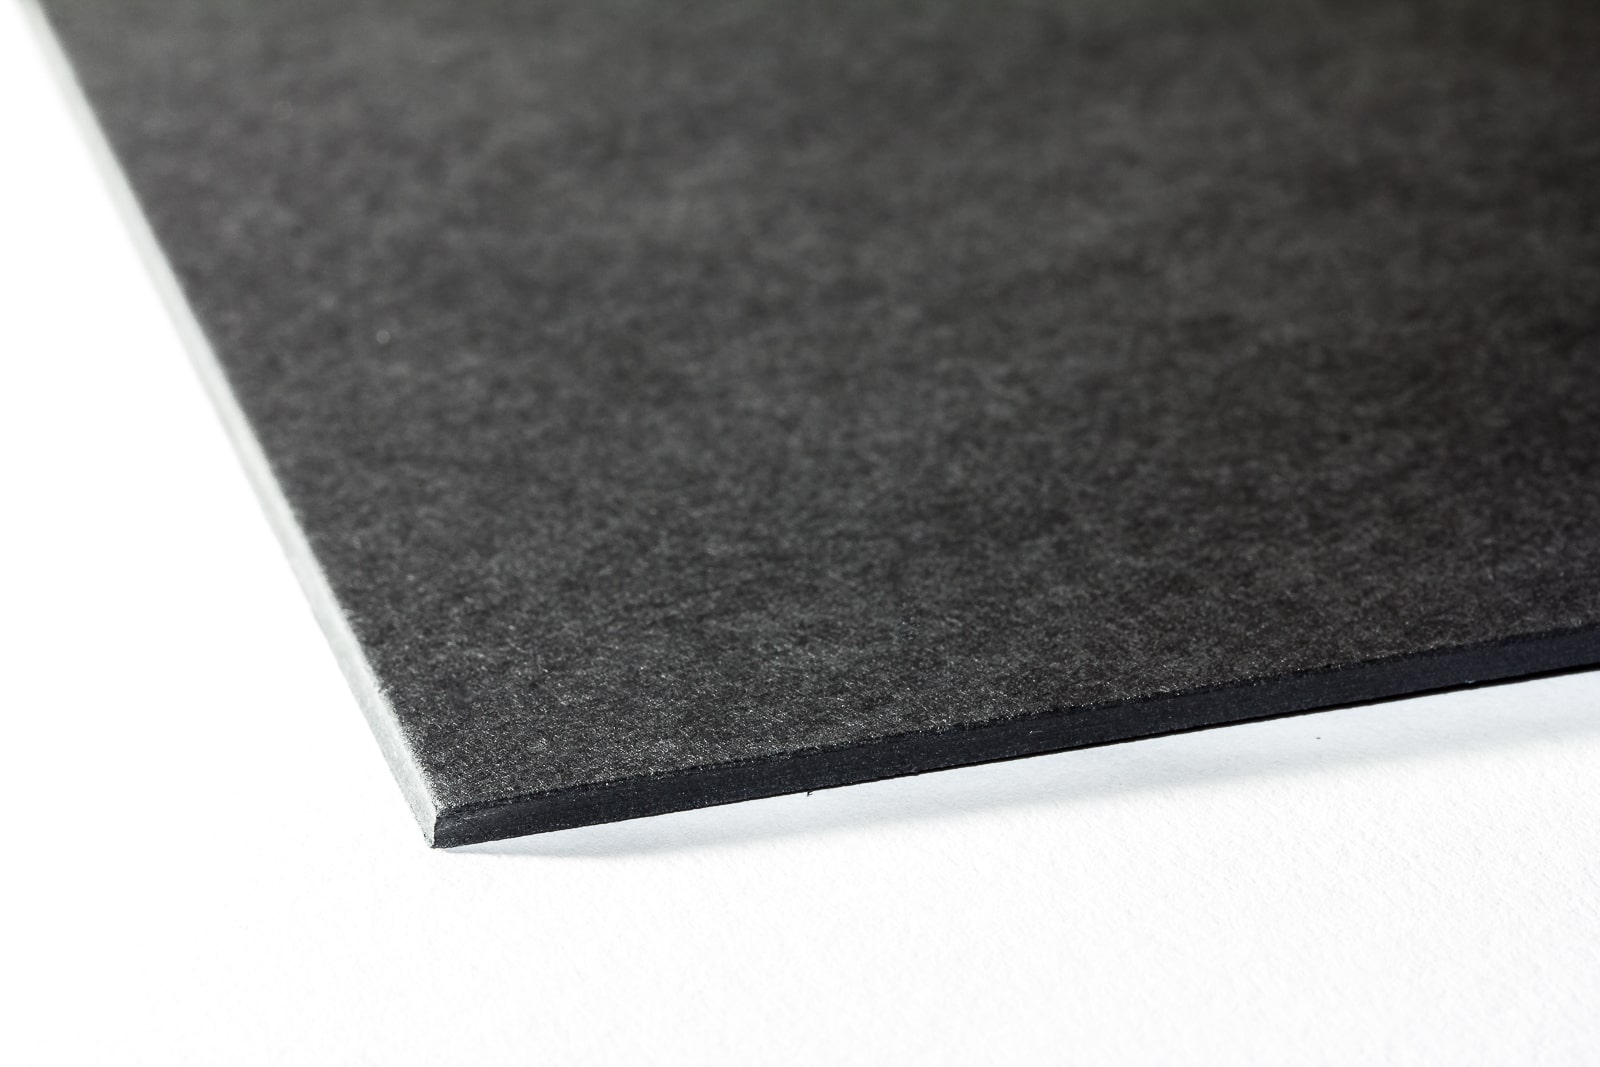 Die Oberflächenstruktur unseres Galeriekarton schwarz durchgefärbt